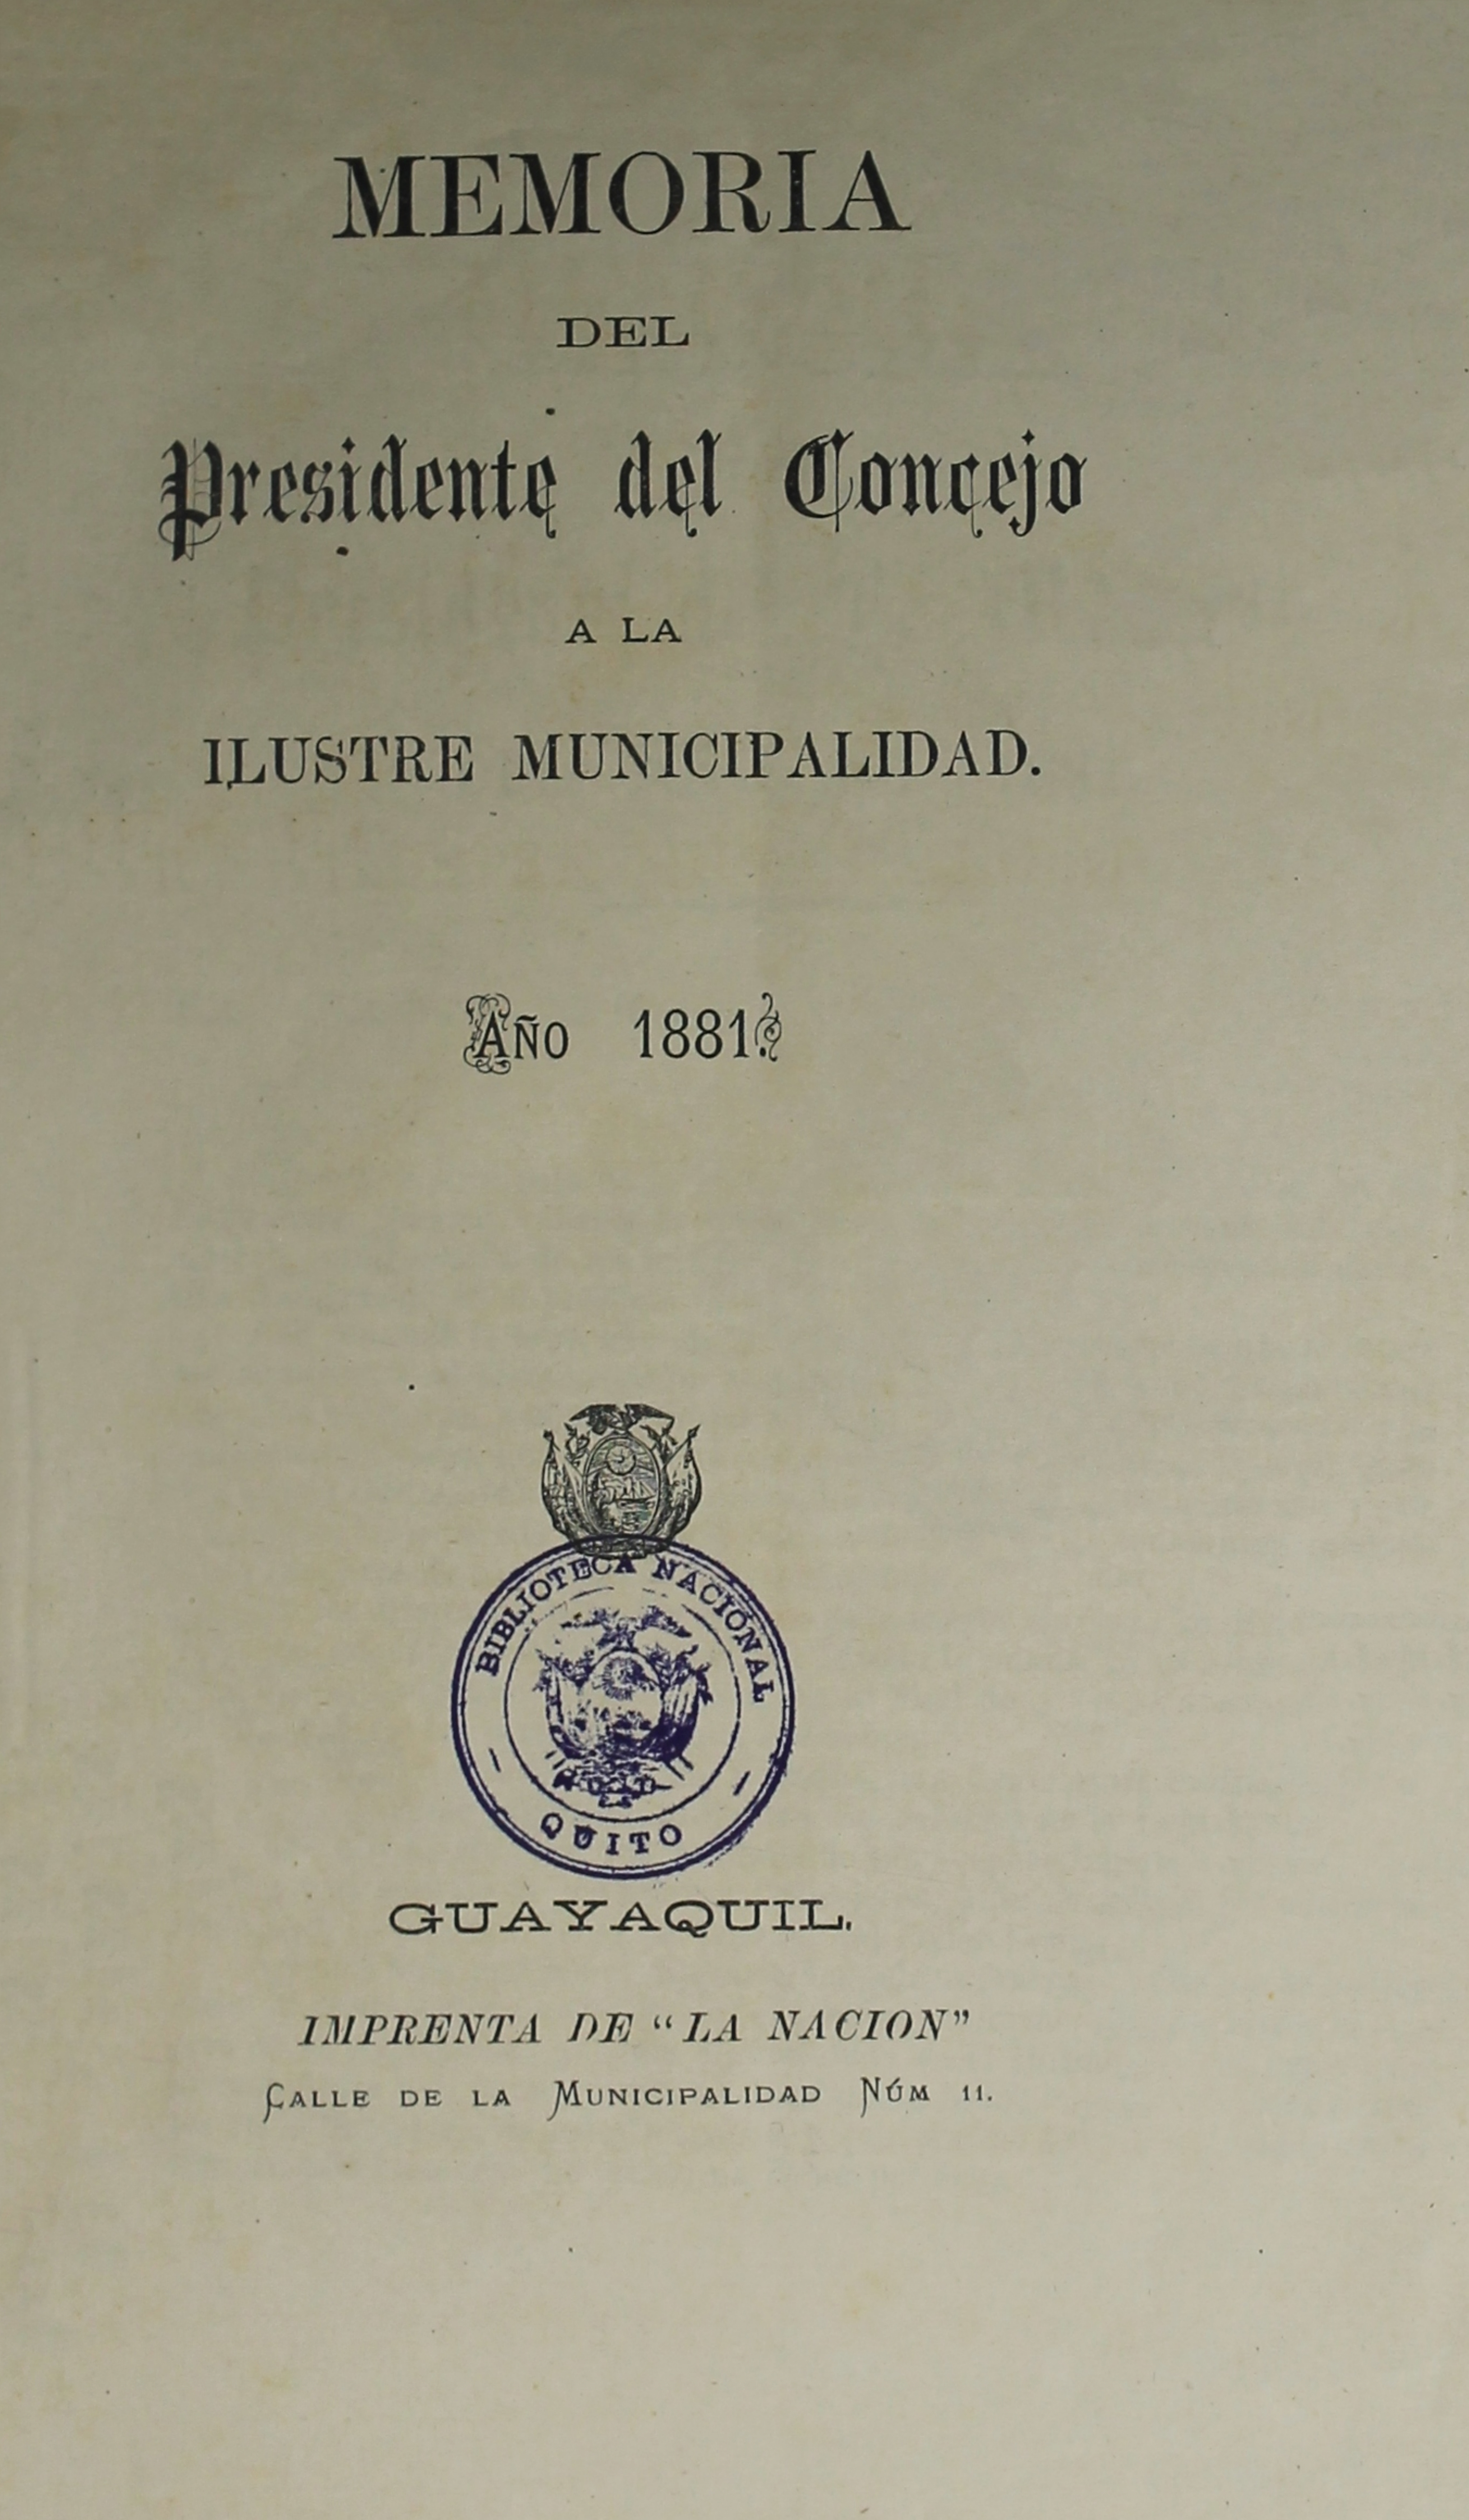 Memoria del Presidente del Concejo a la Ilustre Municipalidad : año 1881.